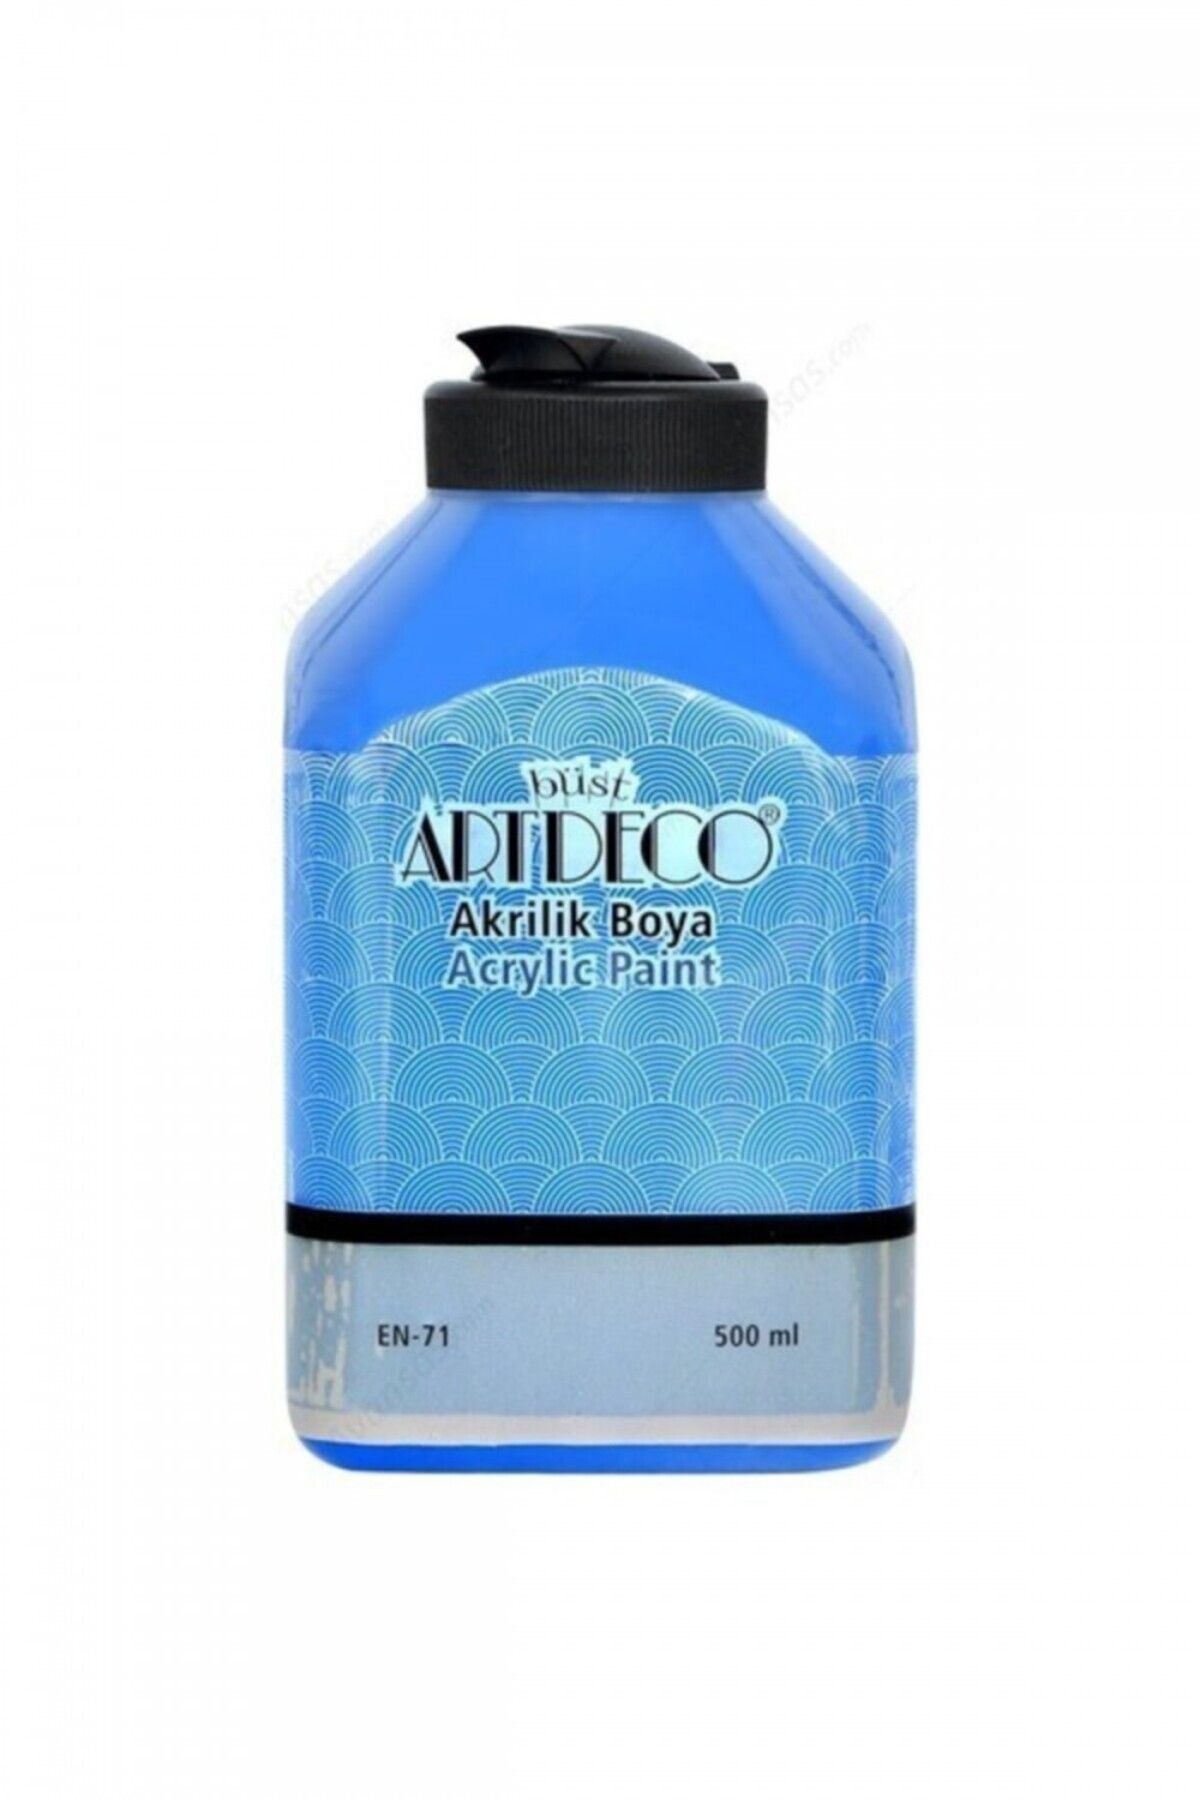 Artdeco Akrilik Boya 500 ml Mavi / 3610